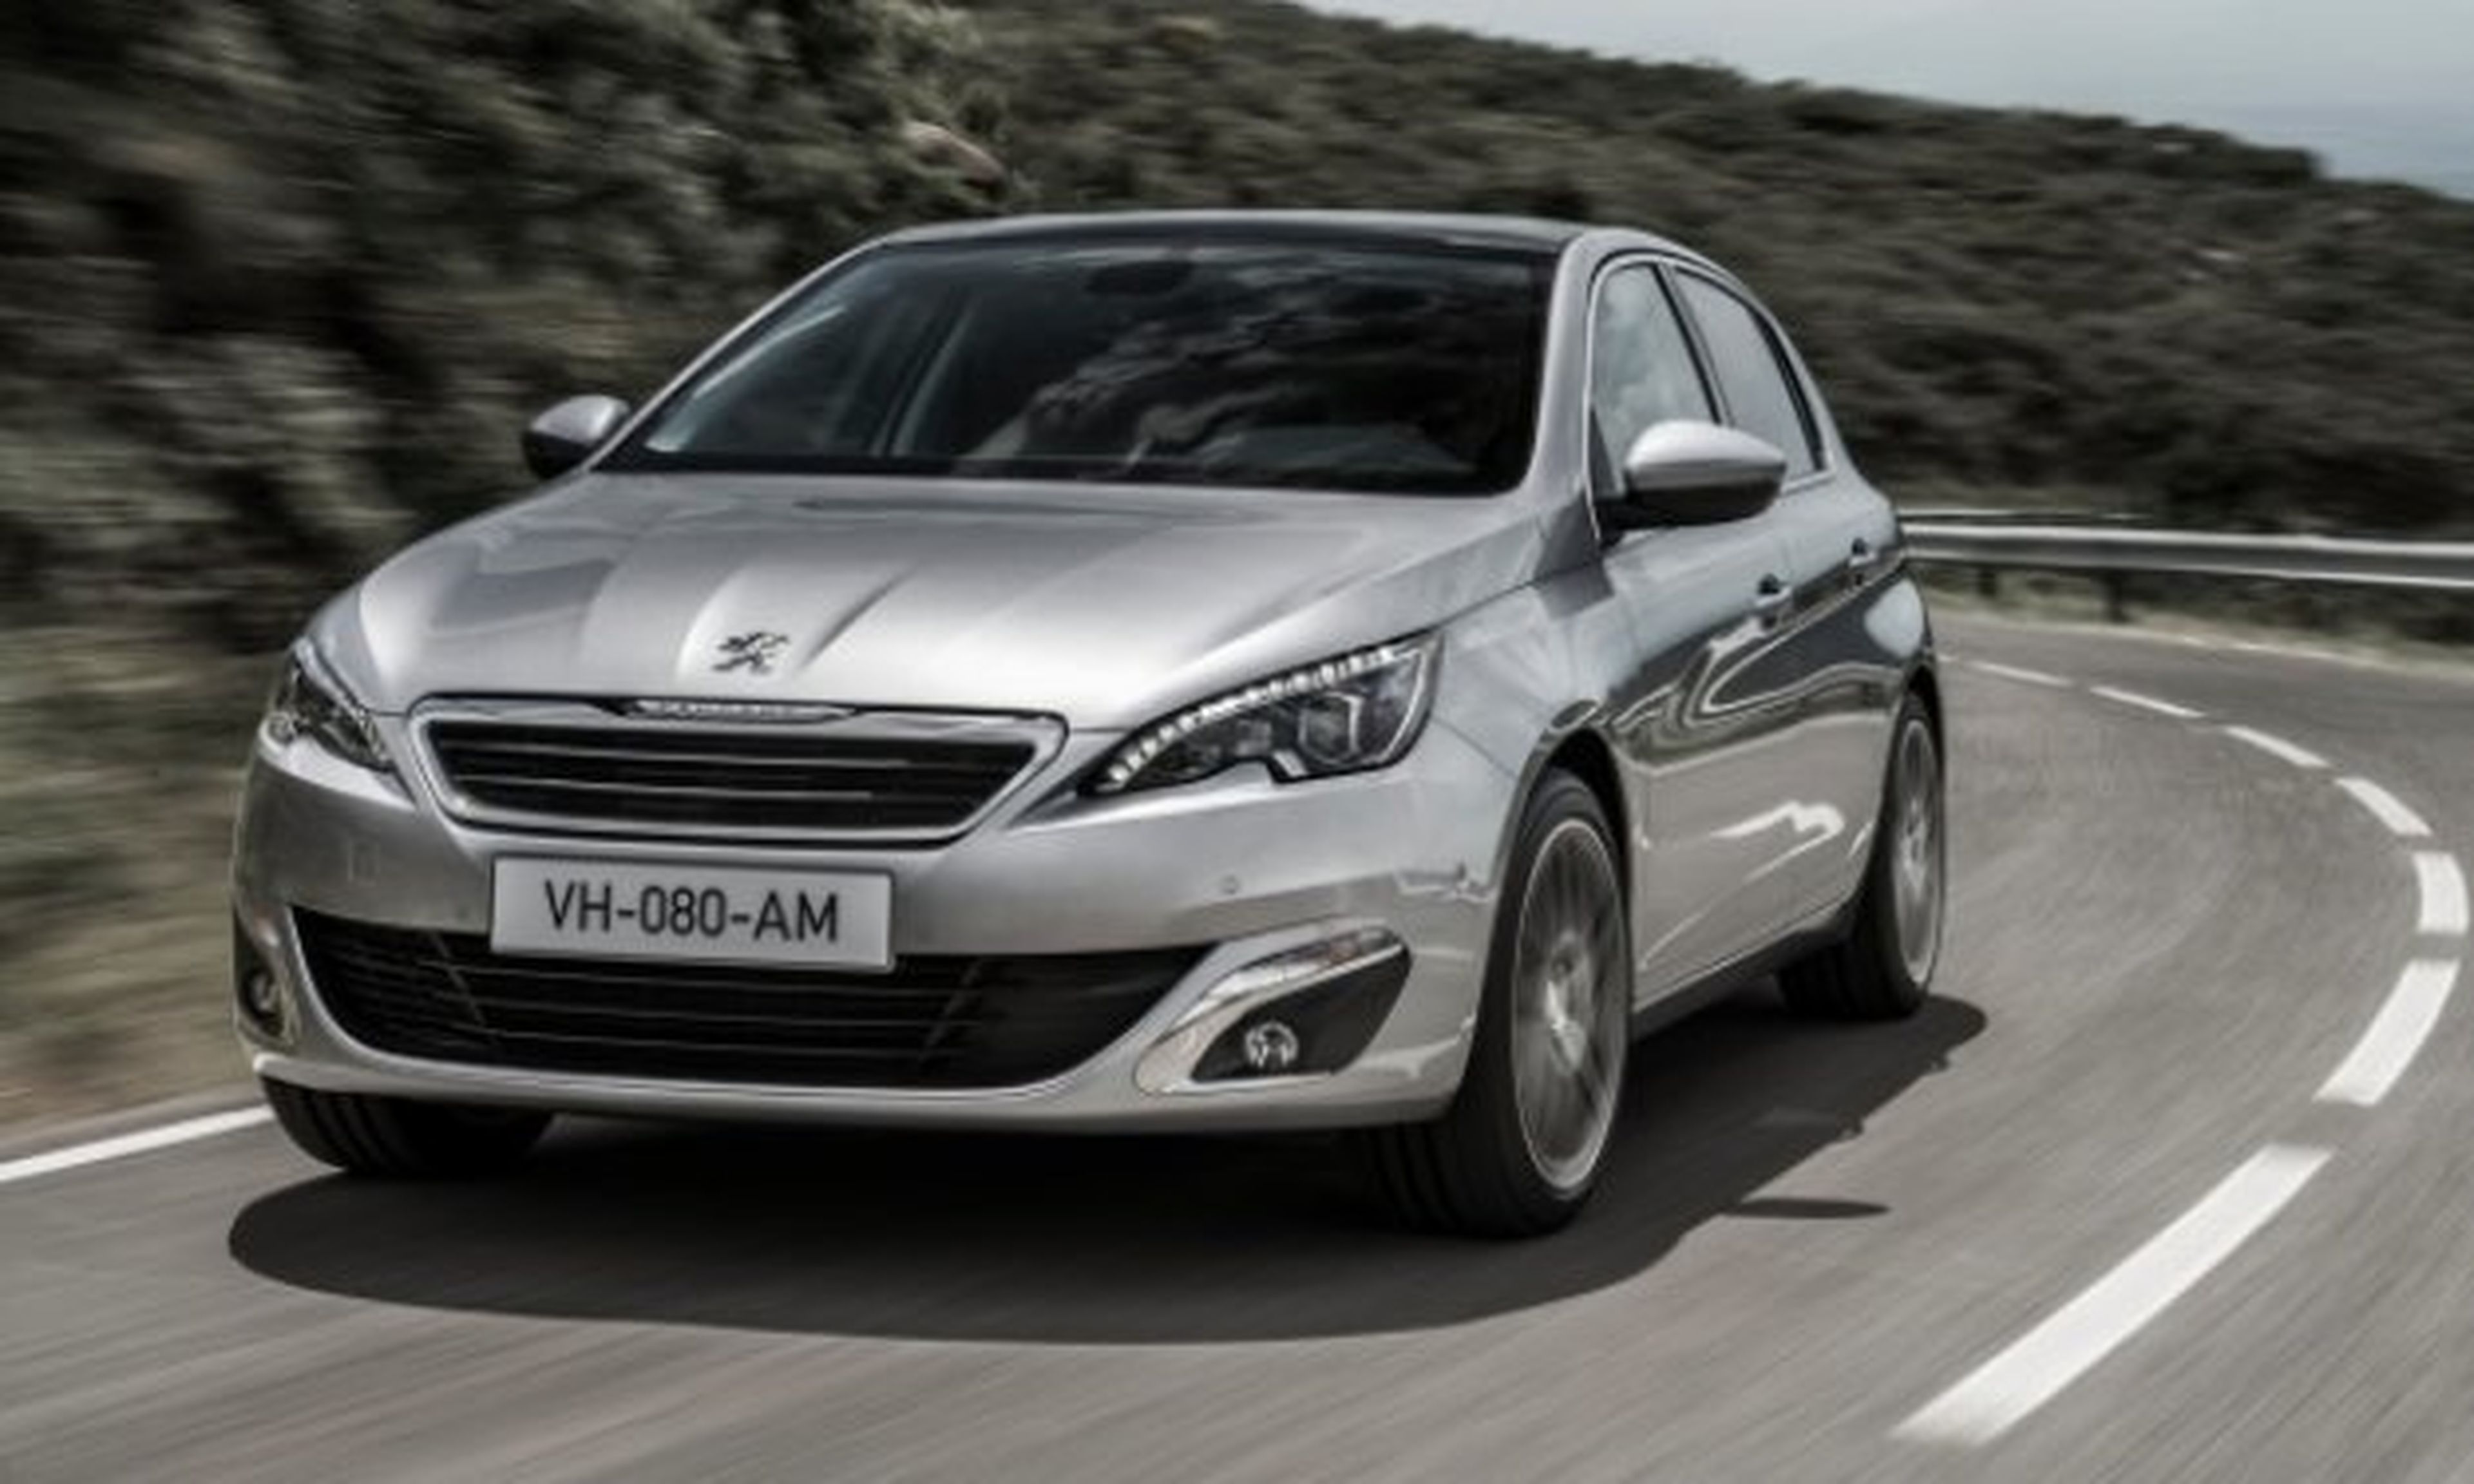 Cambio ETG de Peugeot: el sustituto del Manual Pilotado